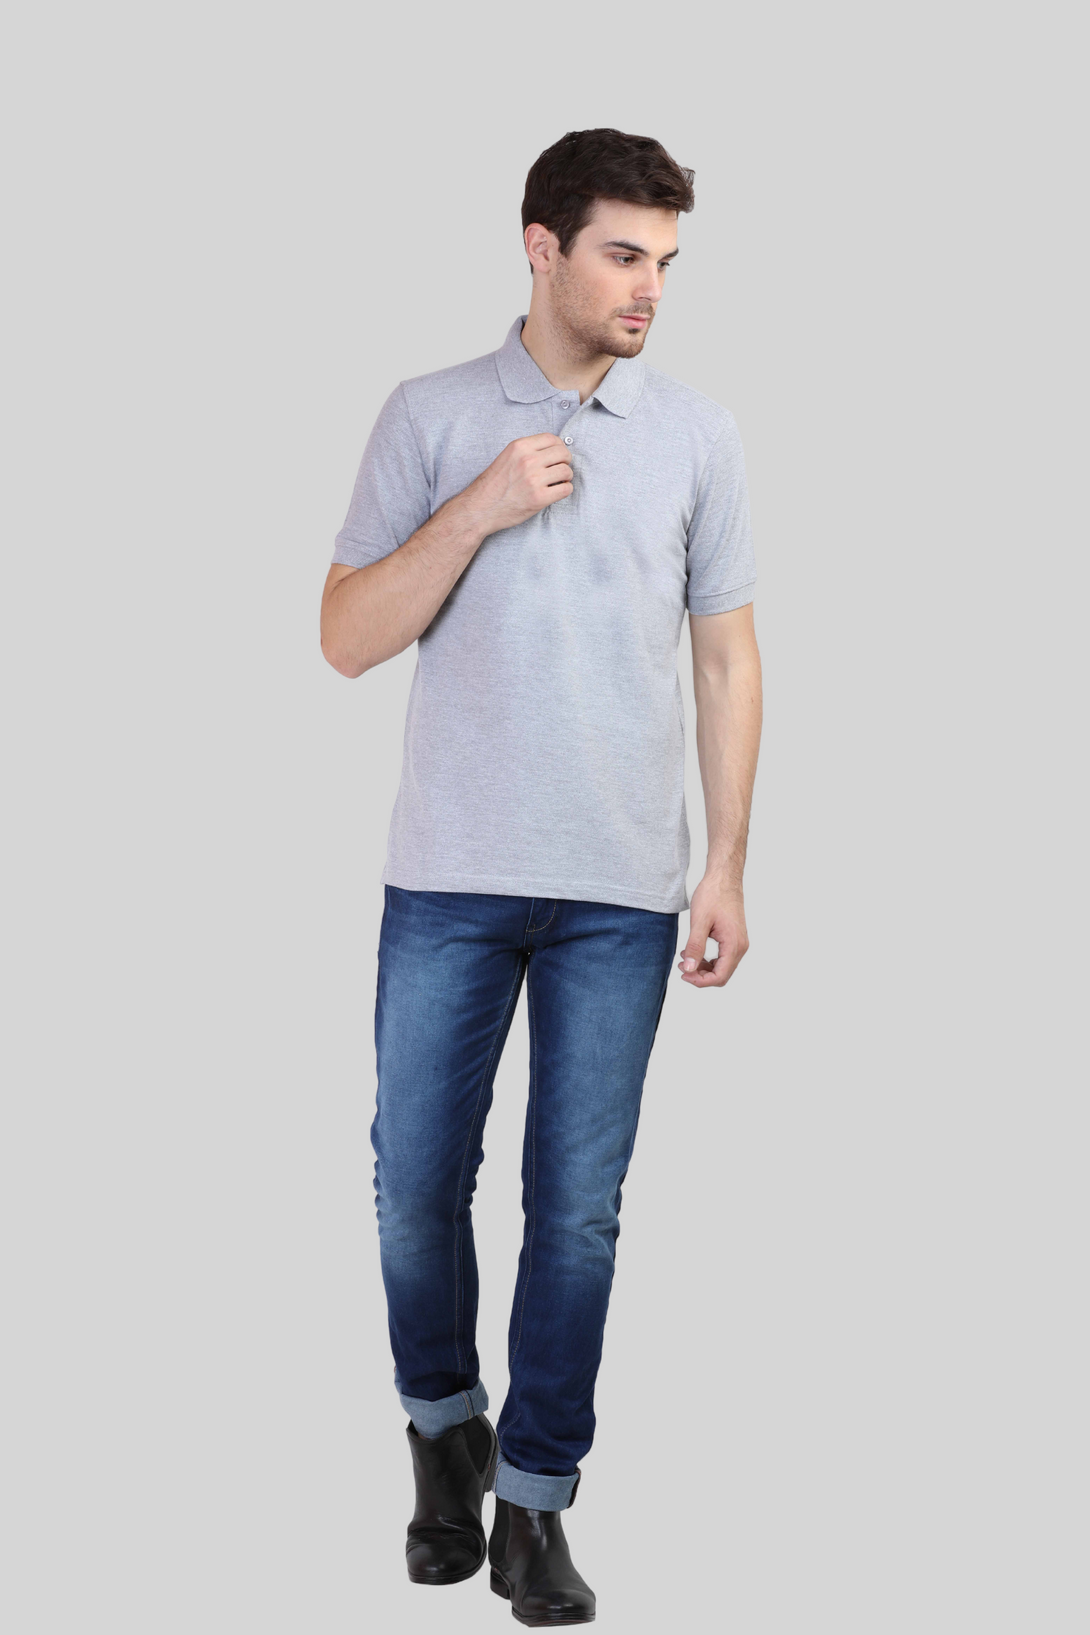 Grey Melange Polo T-Shirt For Men - WowWaves - 6